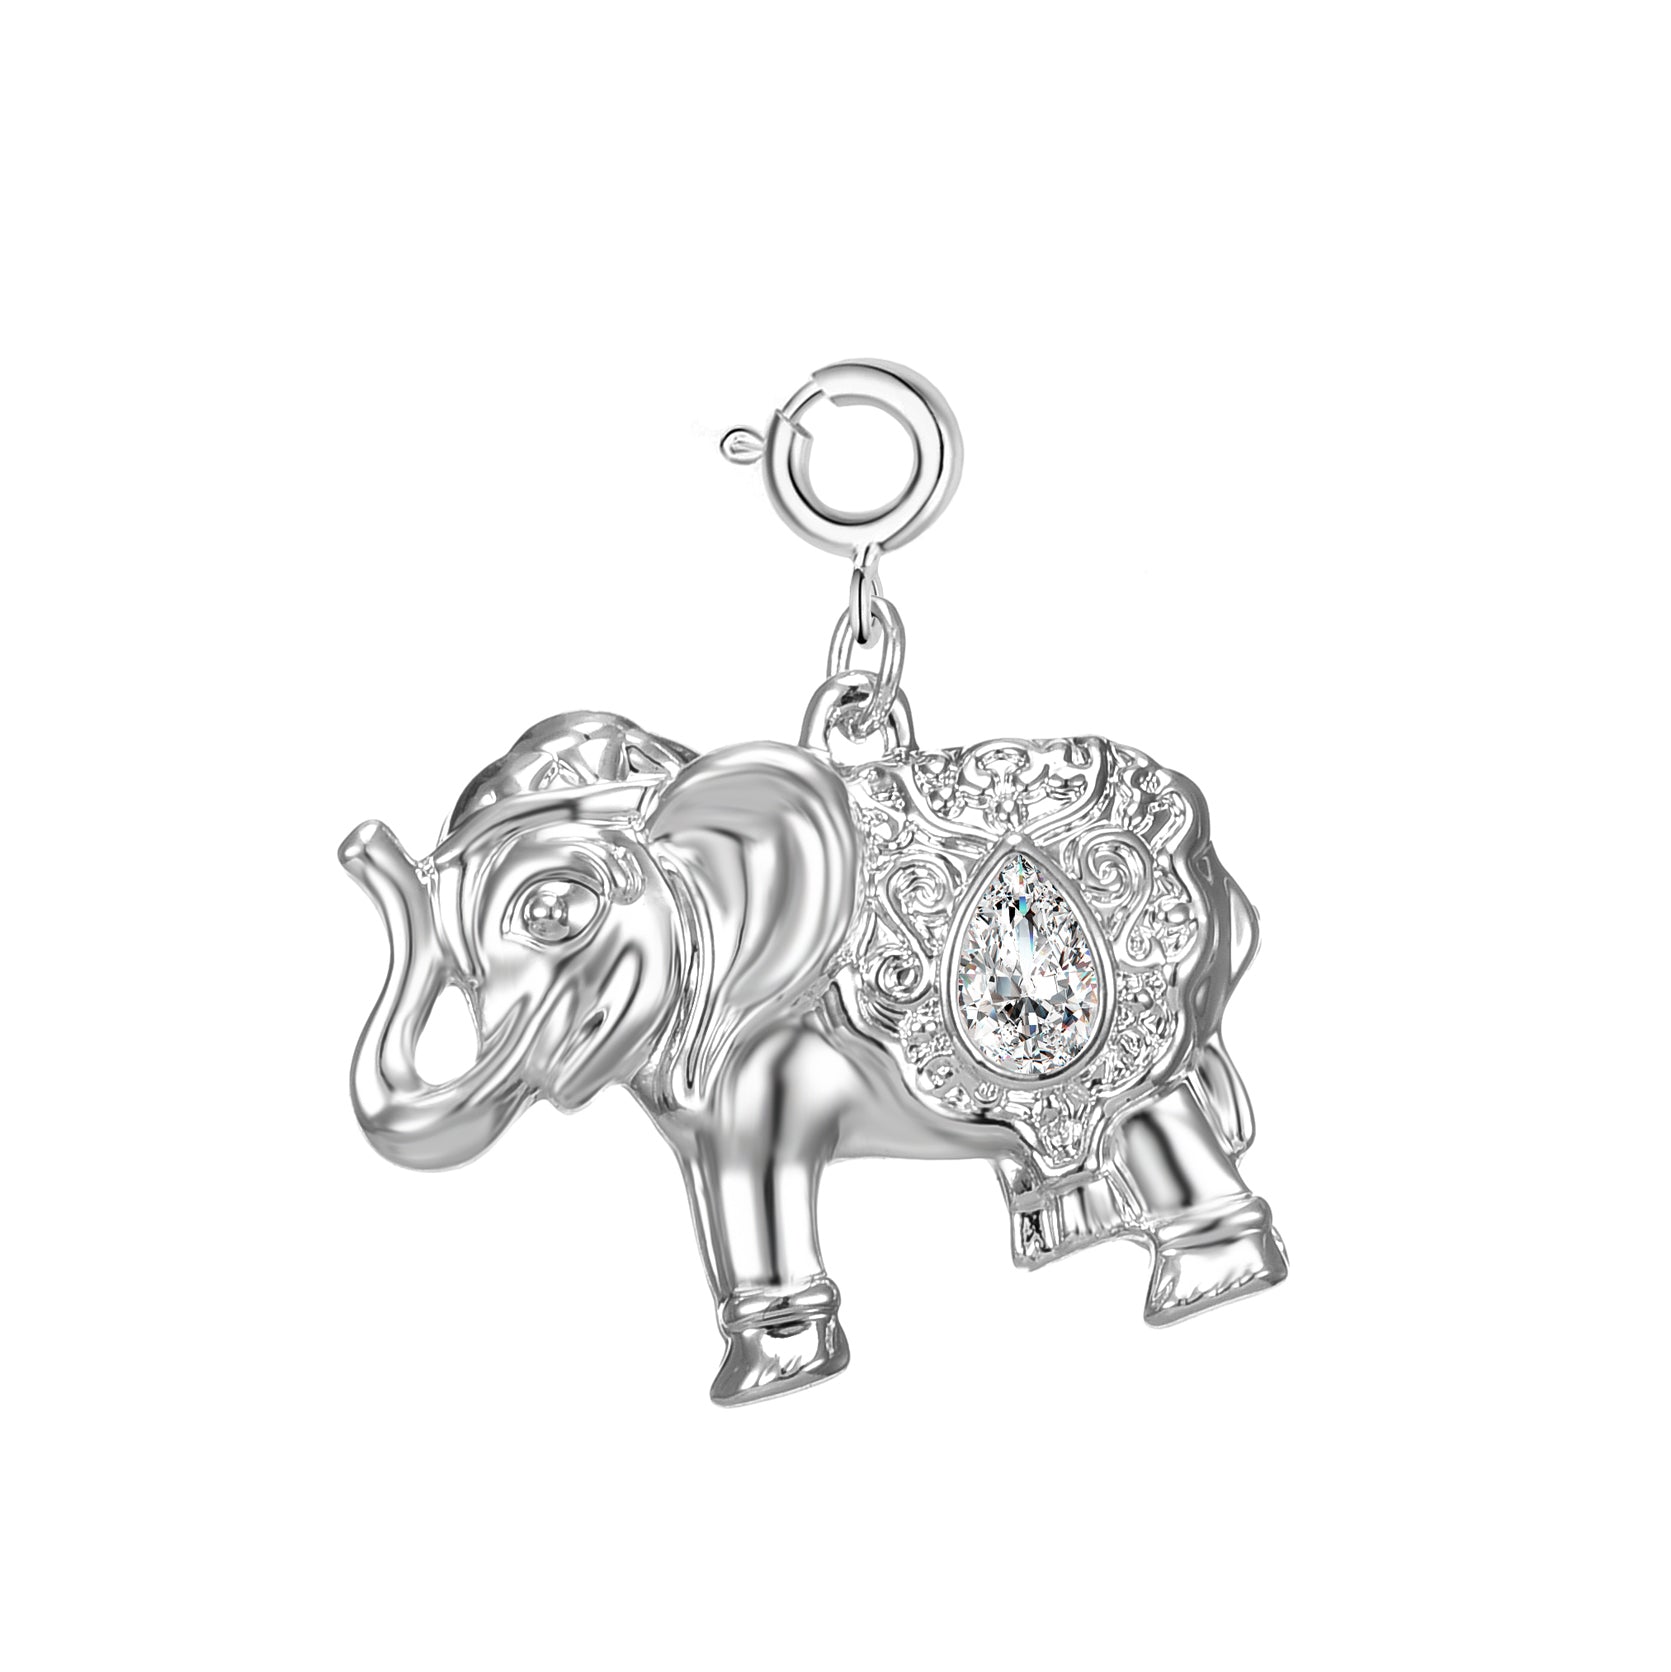 Elephant Charm Created with Zircondia® Crystals by Philip Jones Jewellery